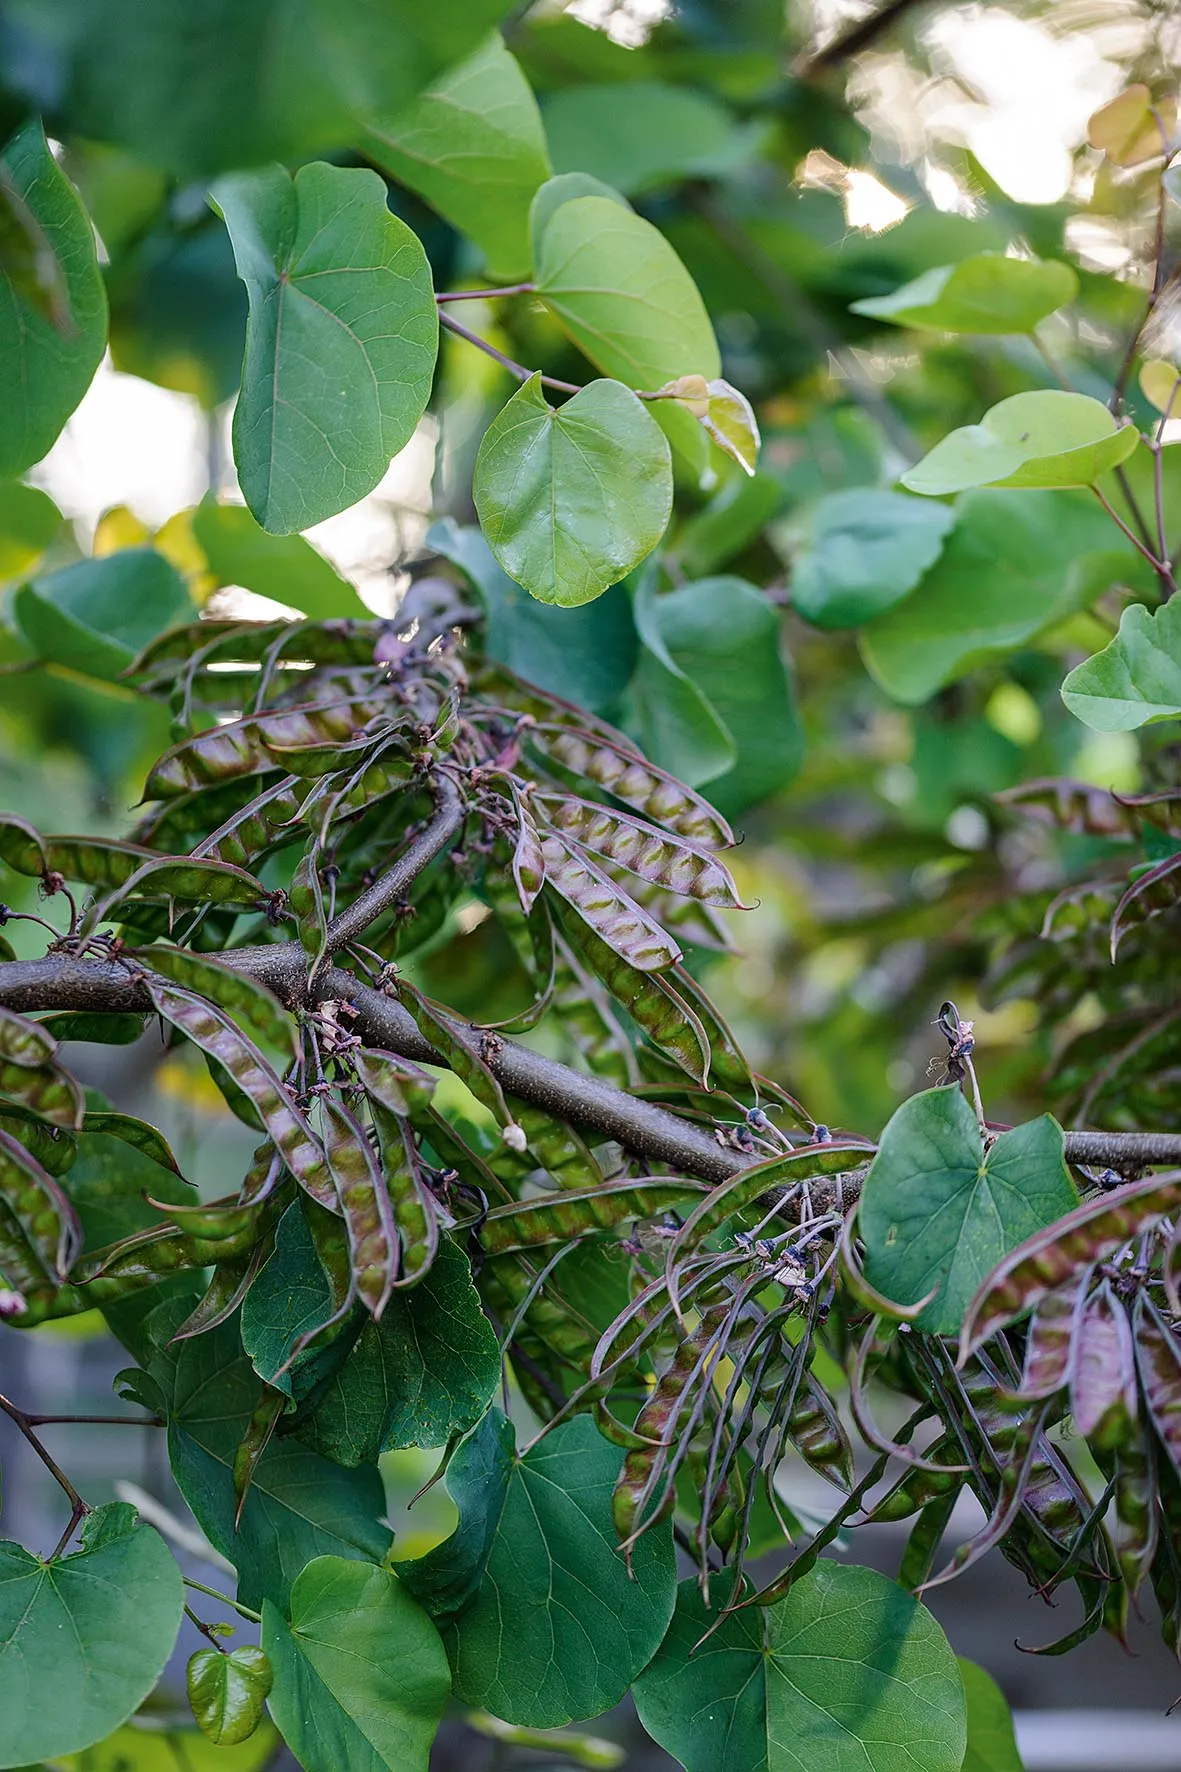 Petite, bushy Cercis siliquastrum with its long, dusky-purple fruit pods.